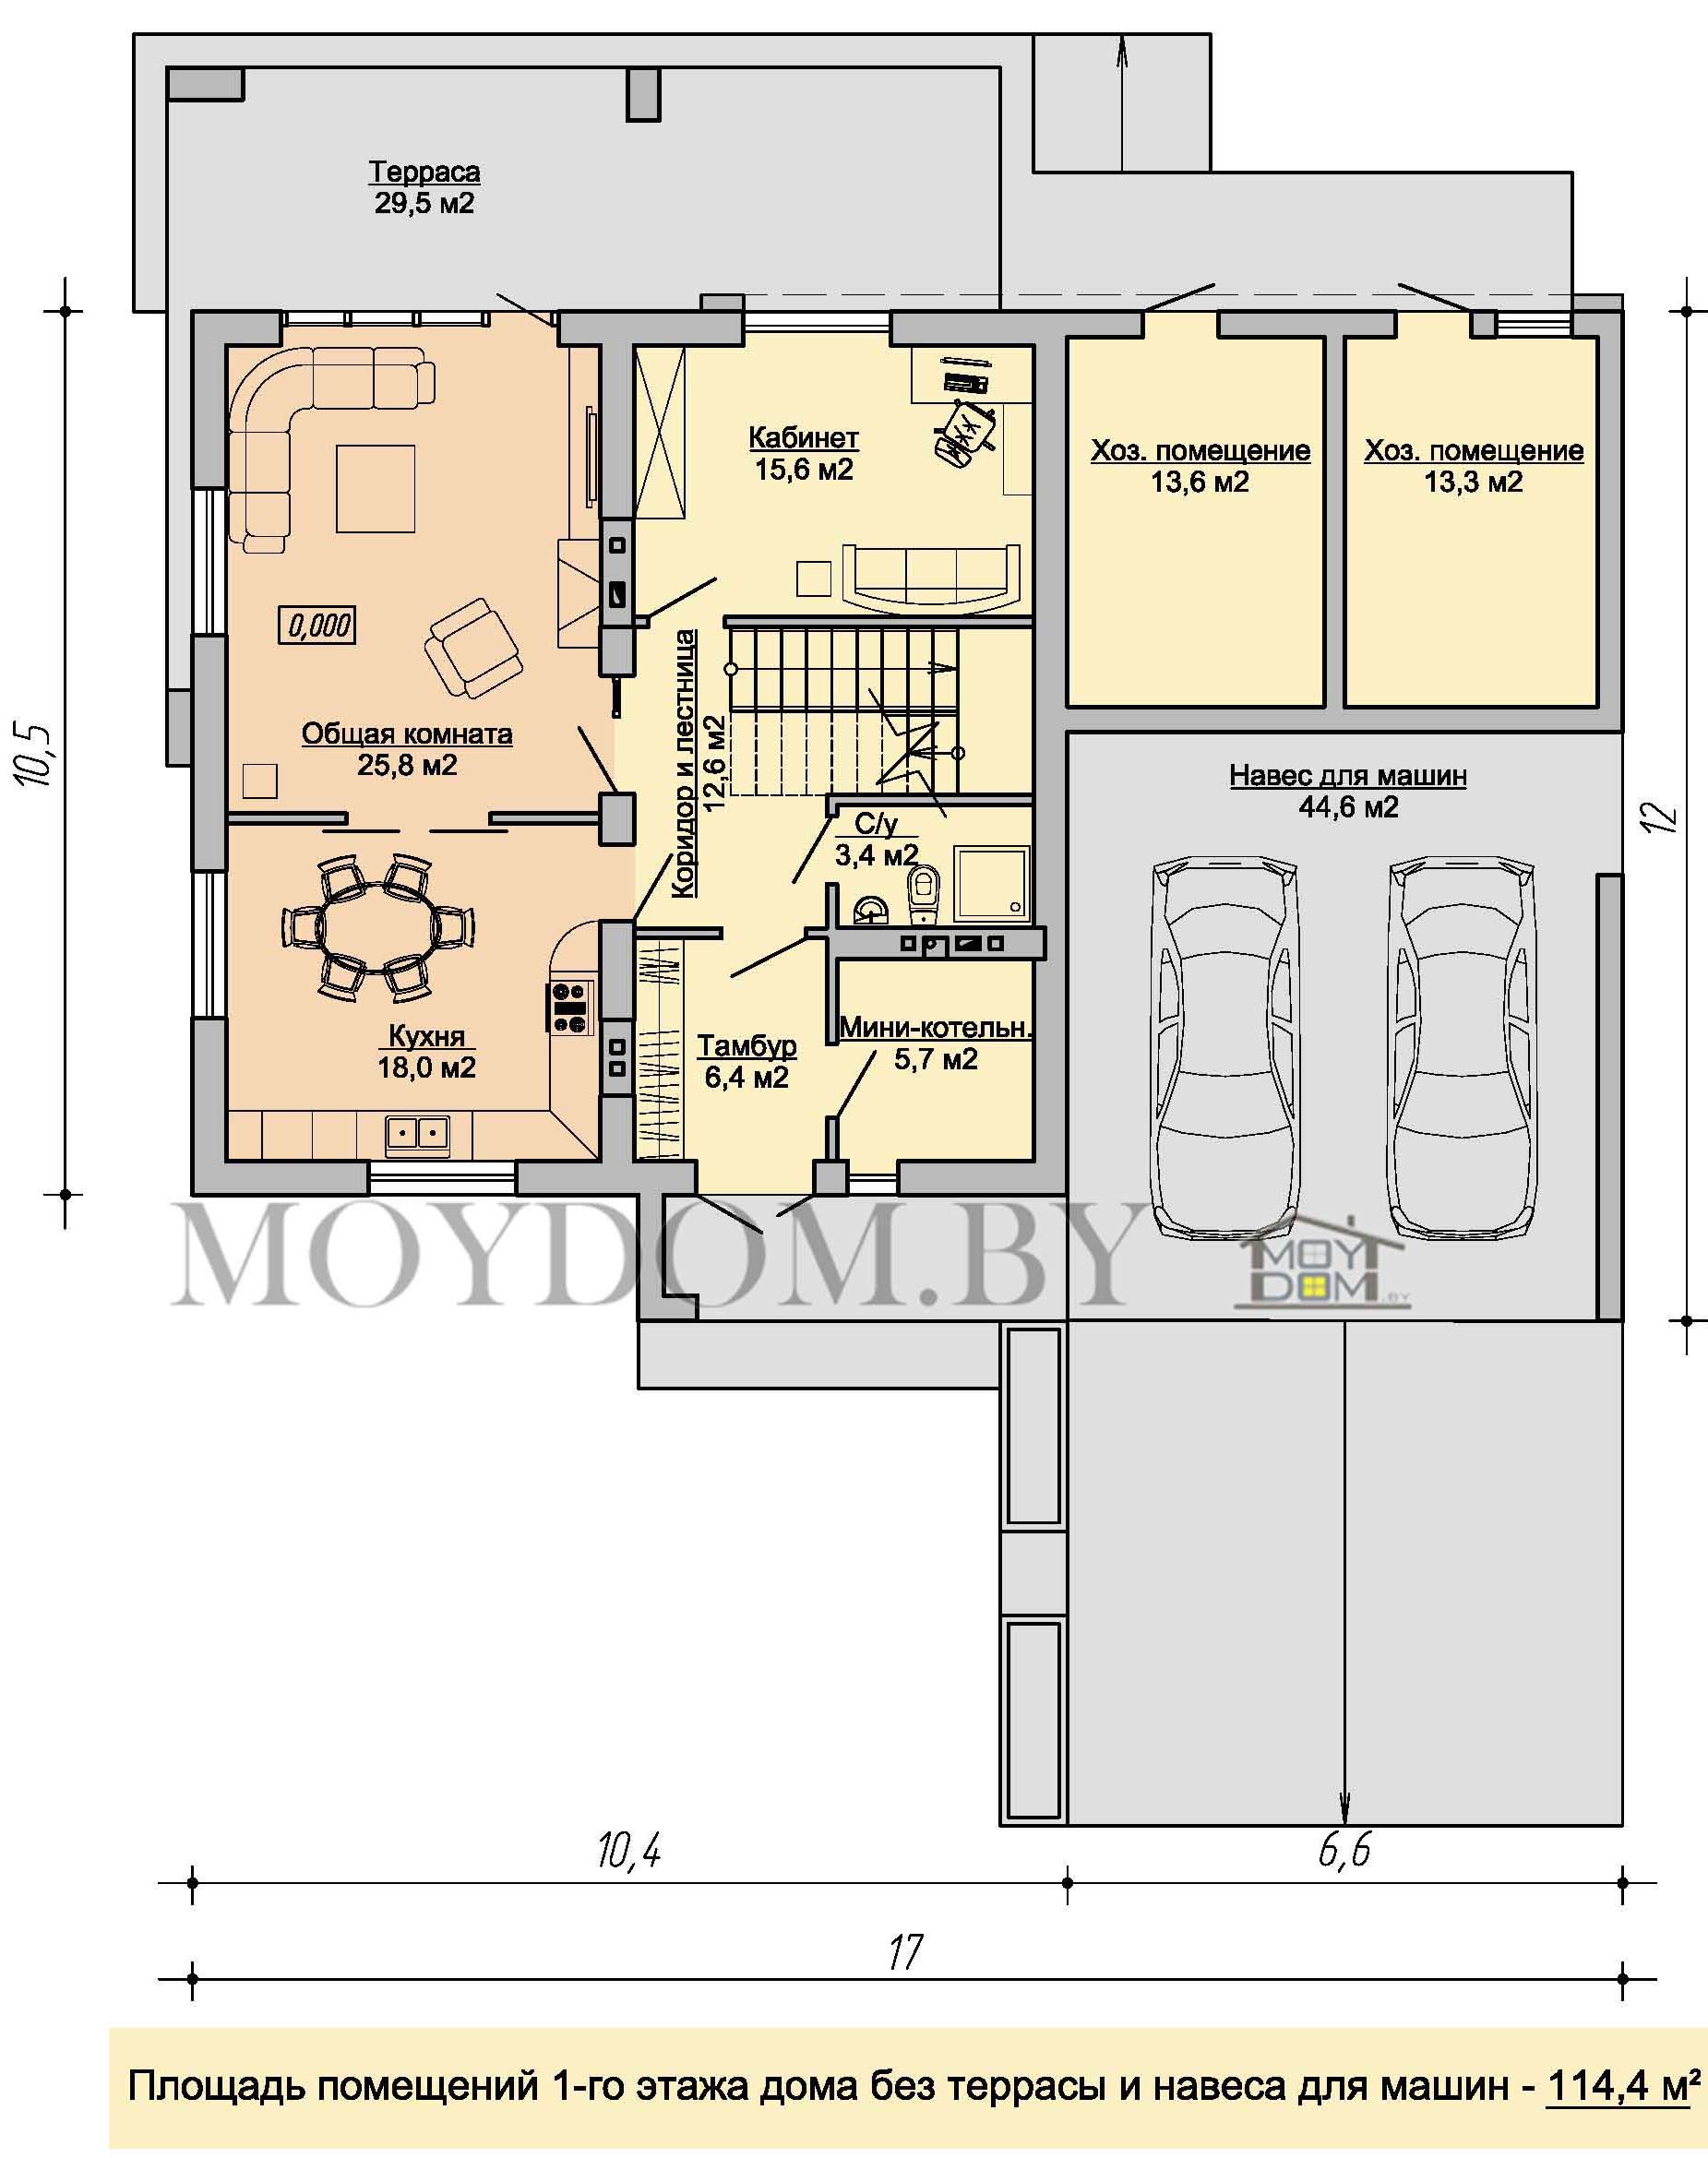 план двухэтажного дома 10,5 на 10,5 170 м.кв. с навесом